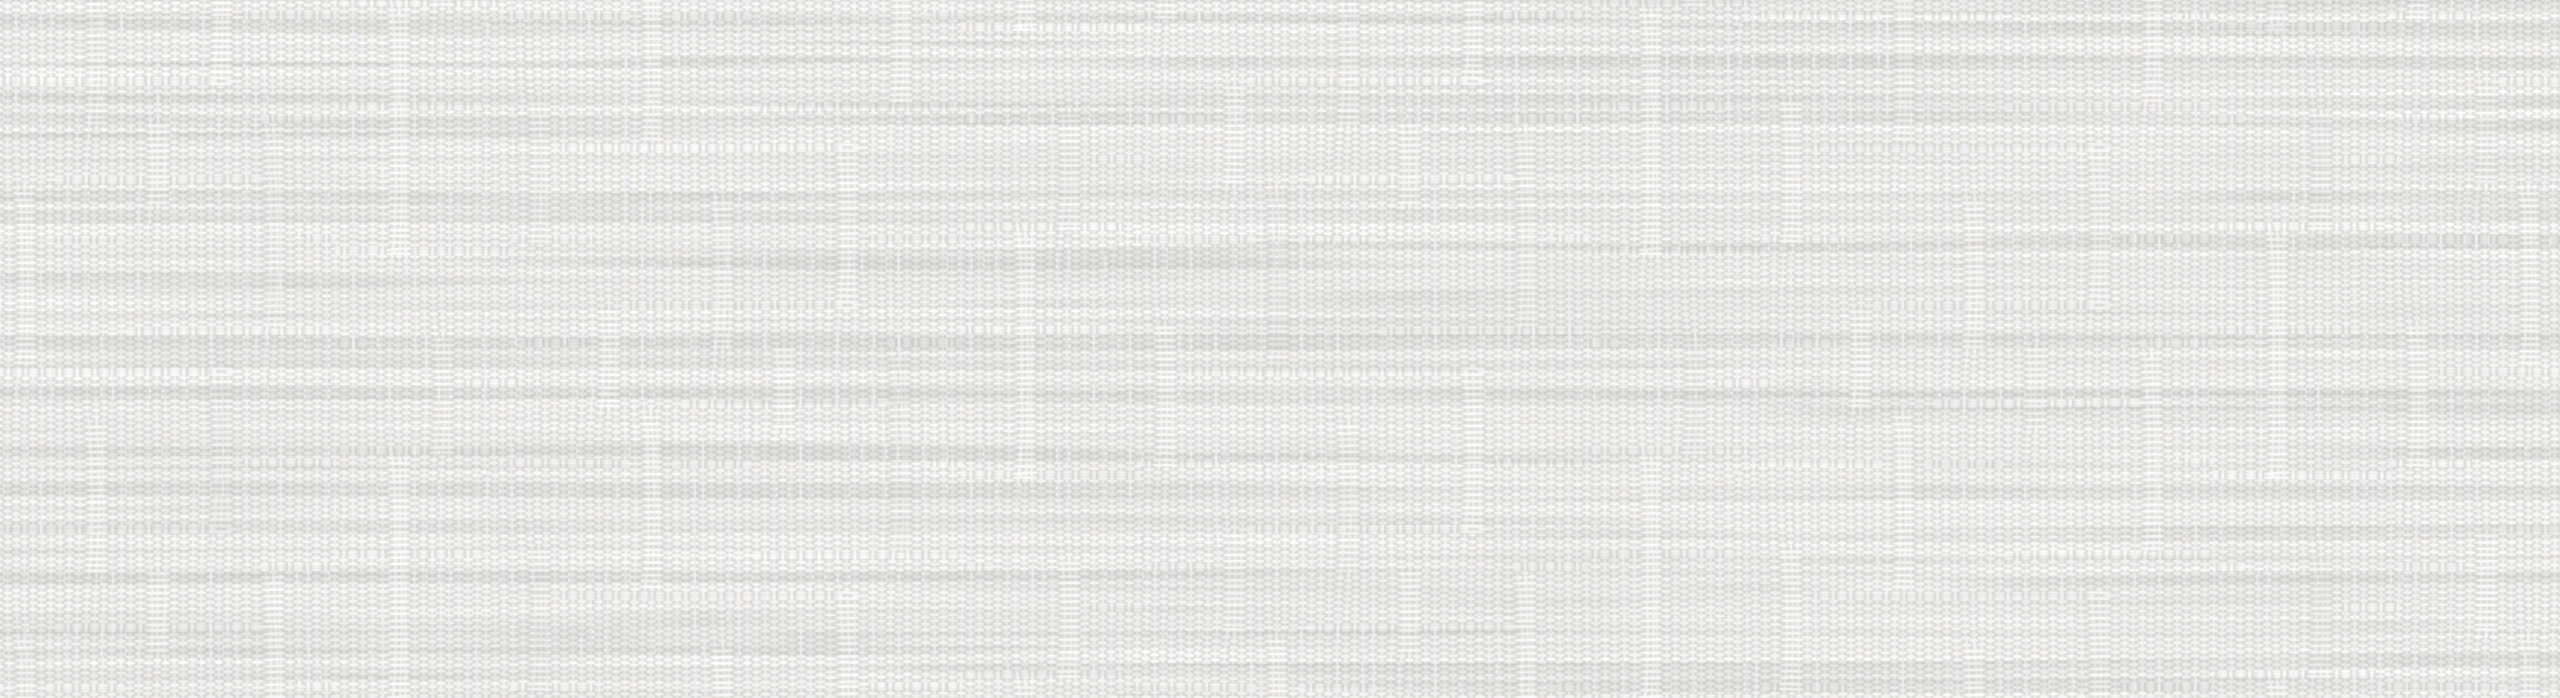 картинка 88308-1 PHOENIX 2018 Обои виниловые на бумажной основе 1.06*15.6 рисунок ткань цвет серый